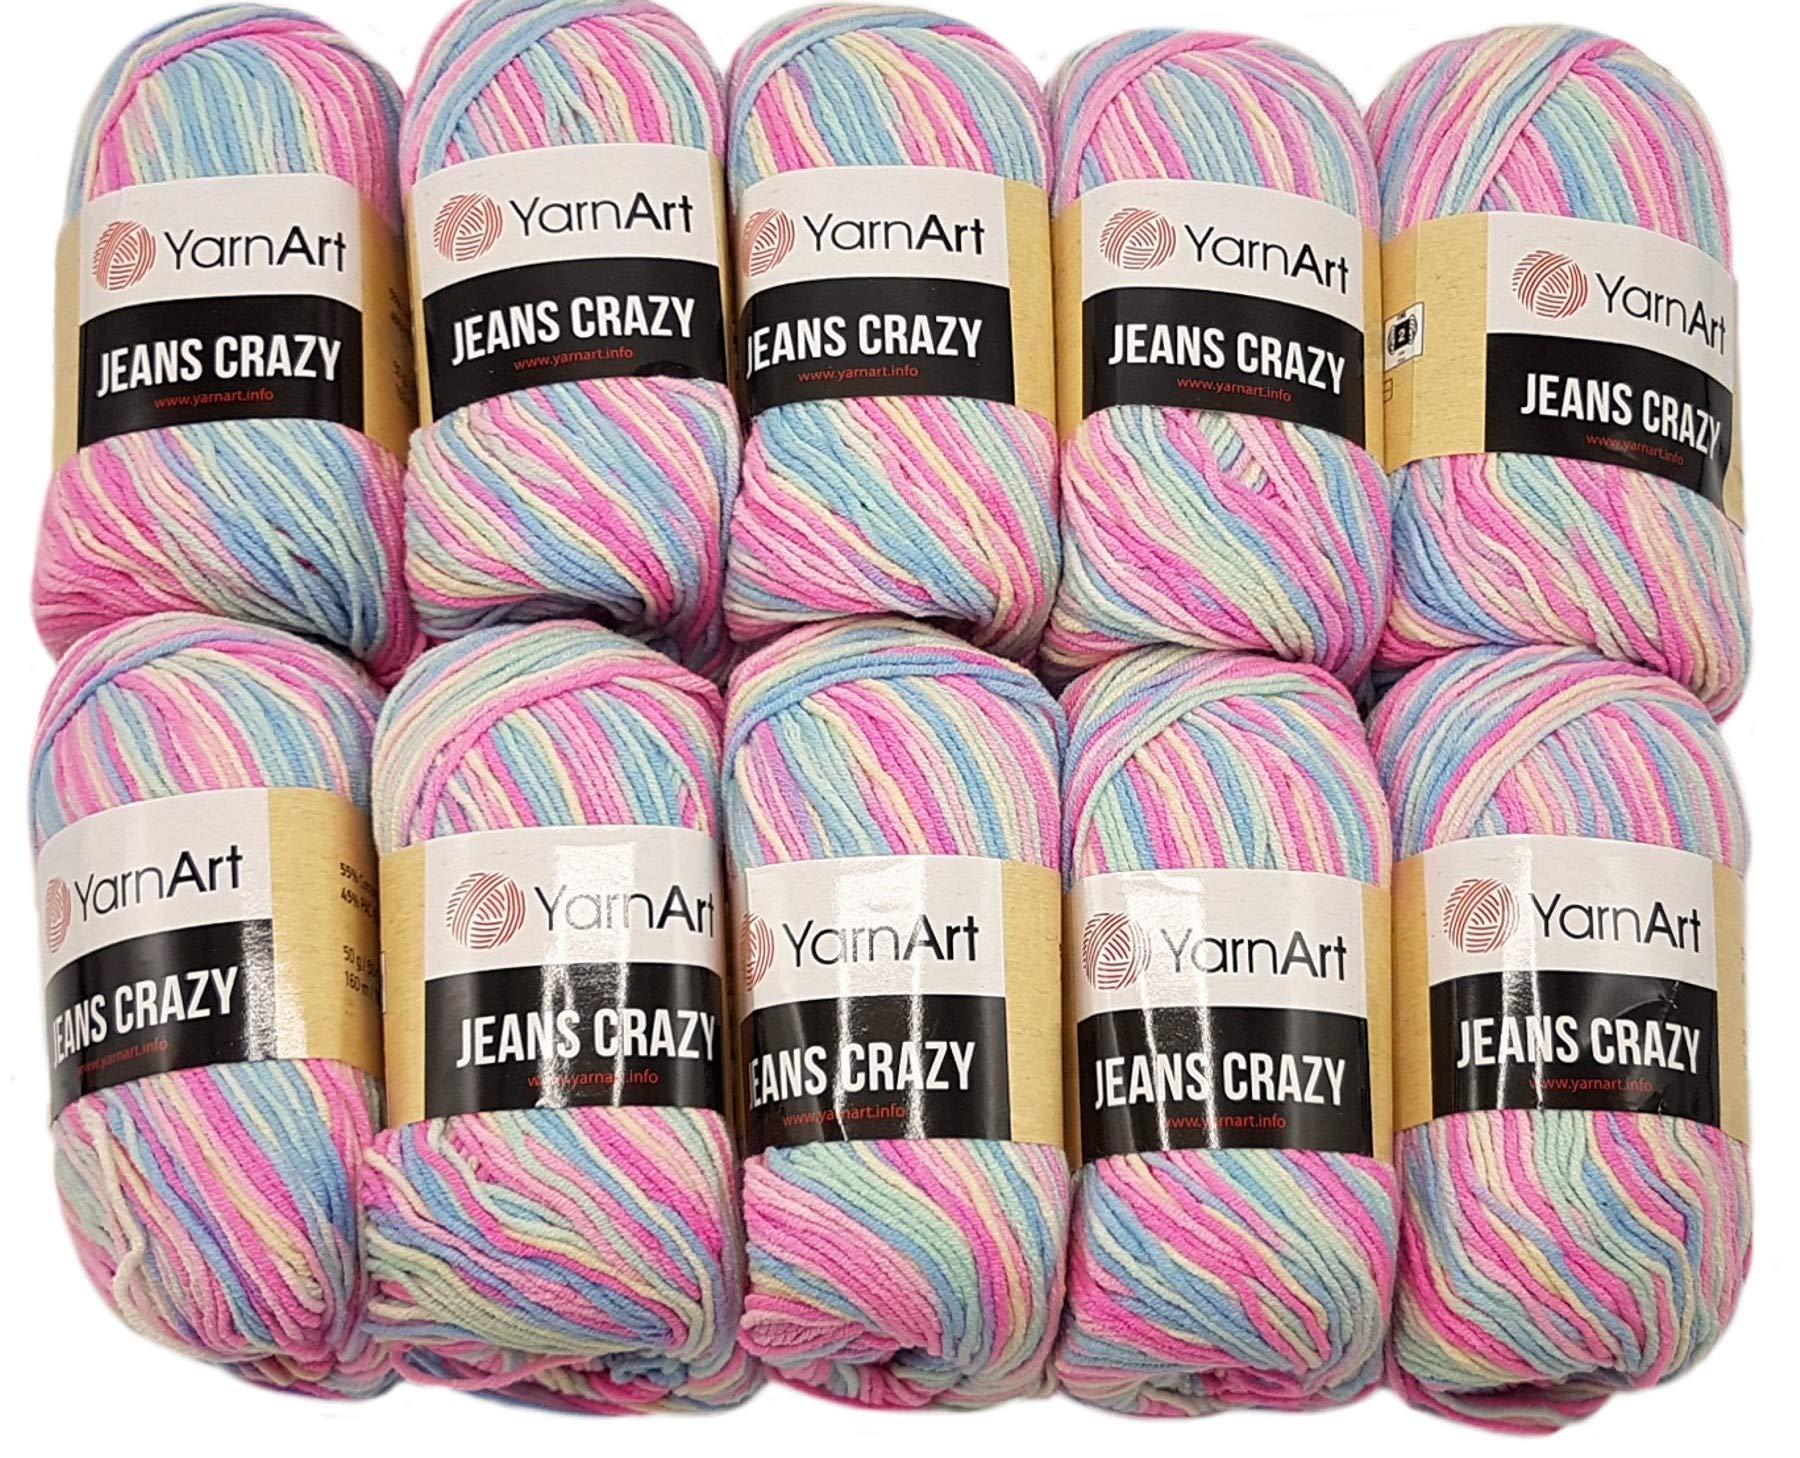 YarnArt Jeans Crazy Strickwollknäuel,10er-Packung, 50 g, aus 55 % Baumwolle, 500 g Wolle mit mehrfarbigem Farbverlauf (Rosa, Blau, Mint usw. 7205)